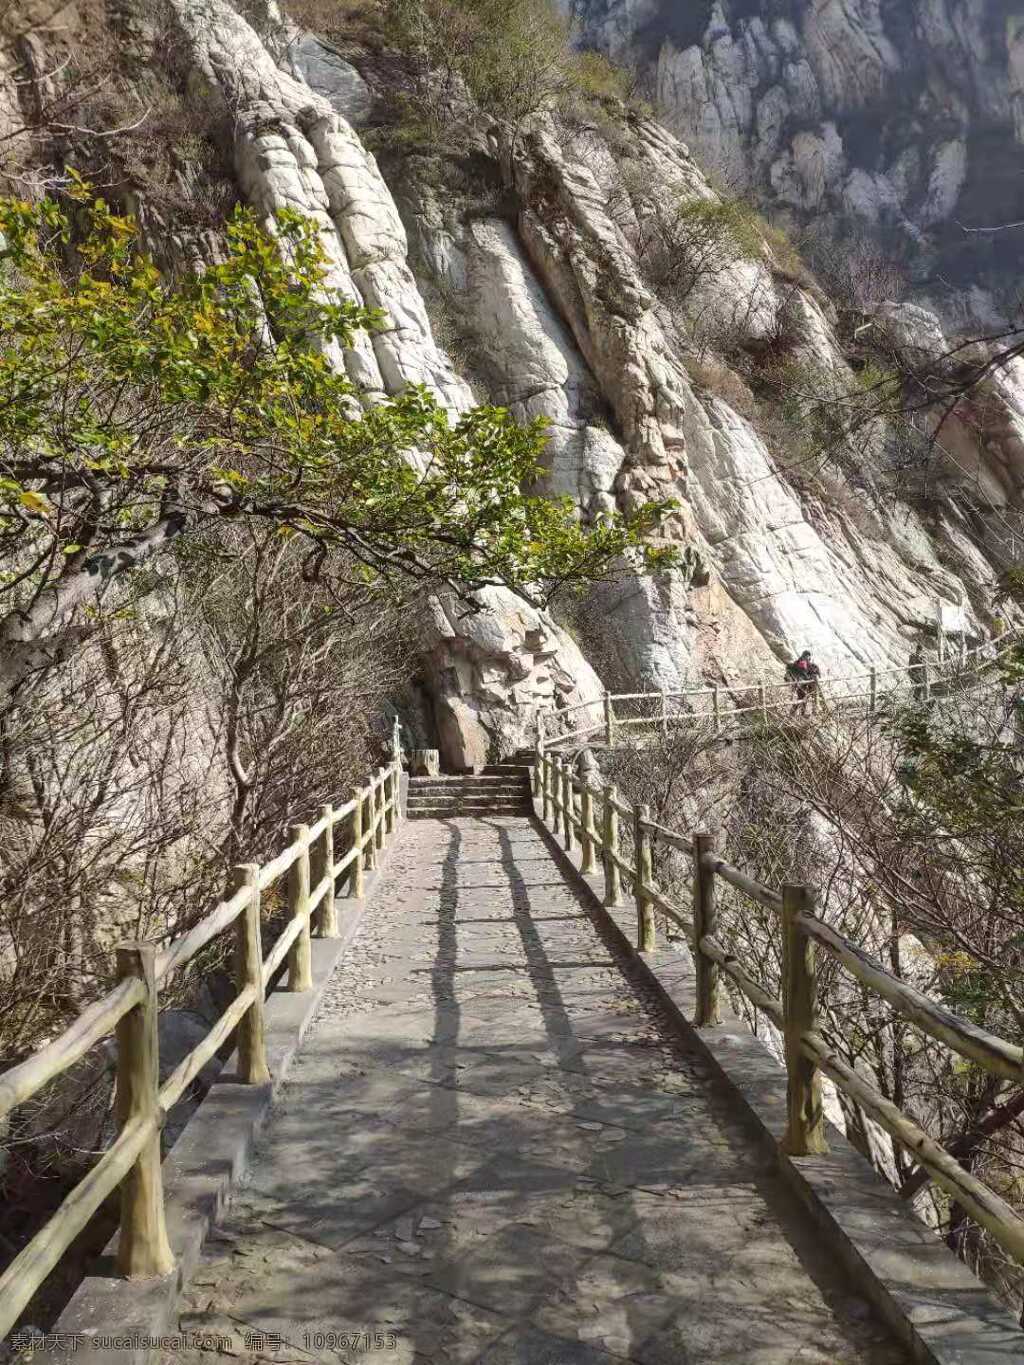 嵩山一览 嵩山 少林寺 风景 风光 拍照 旅游 旅游摄影 国内旅游